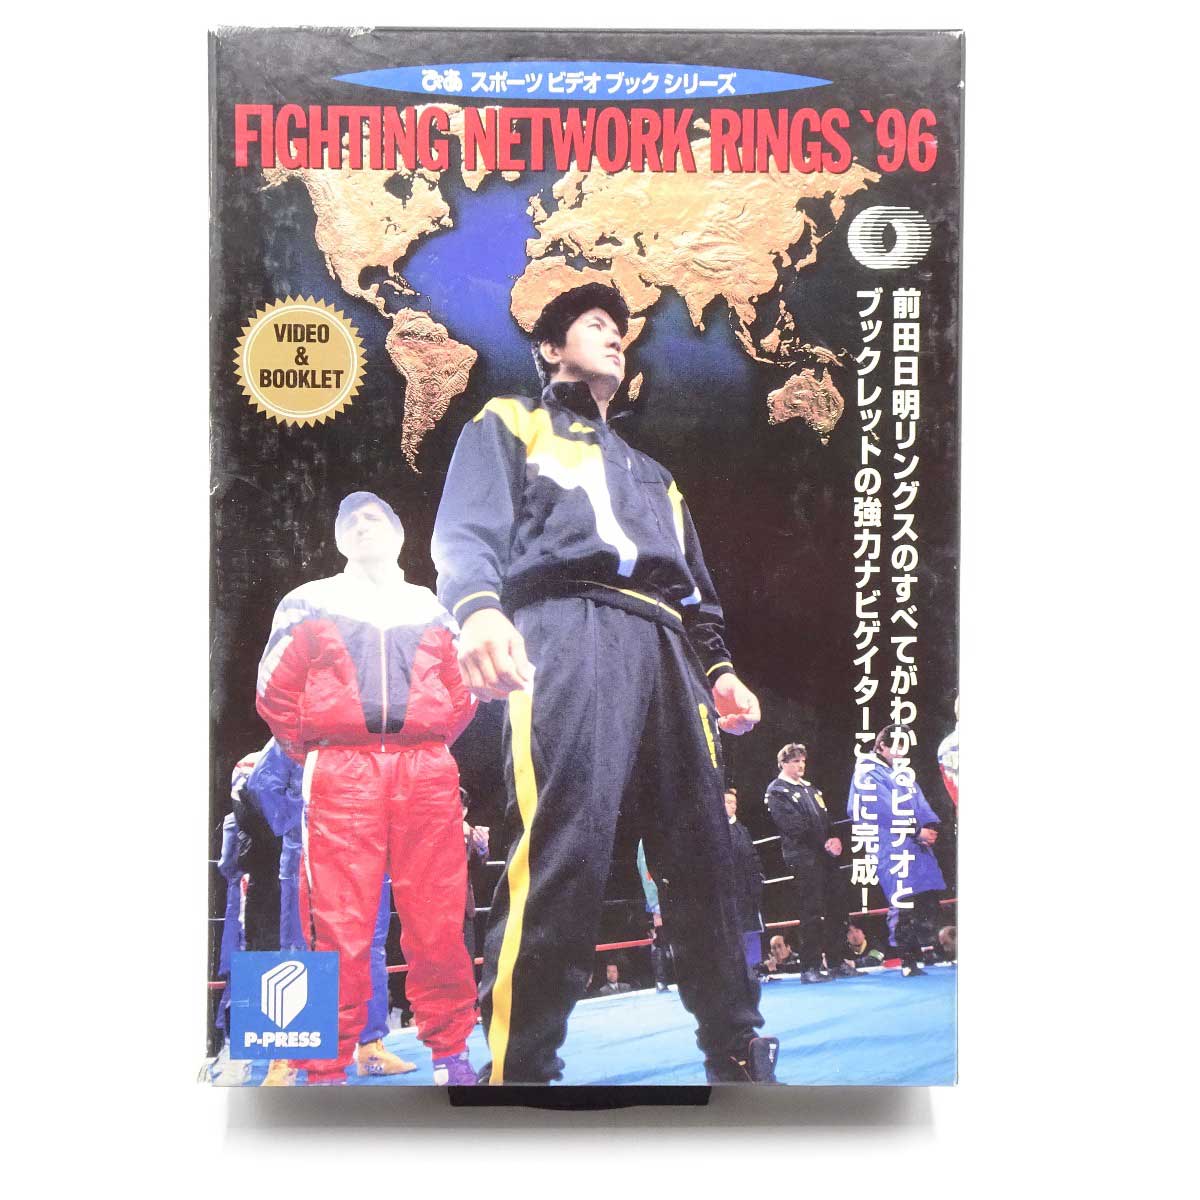 【中古】[VHS] FIGHTING NETWORK RINGS 96 ブックレット付き 前田日明 PVB-03